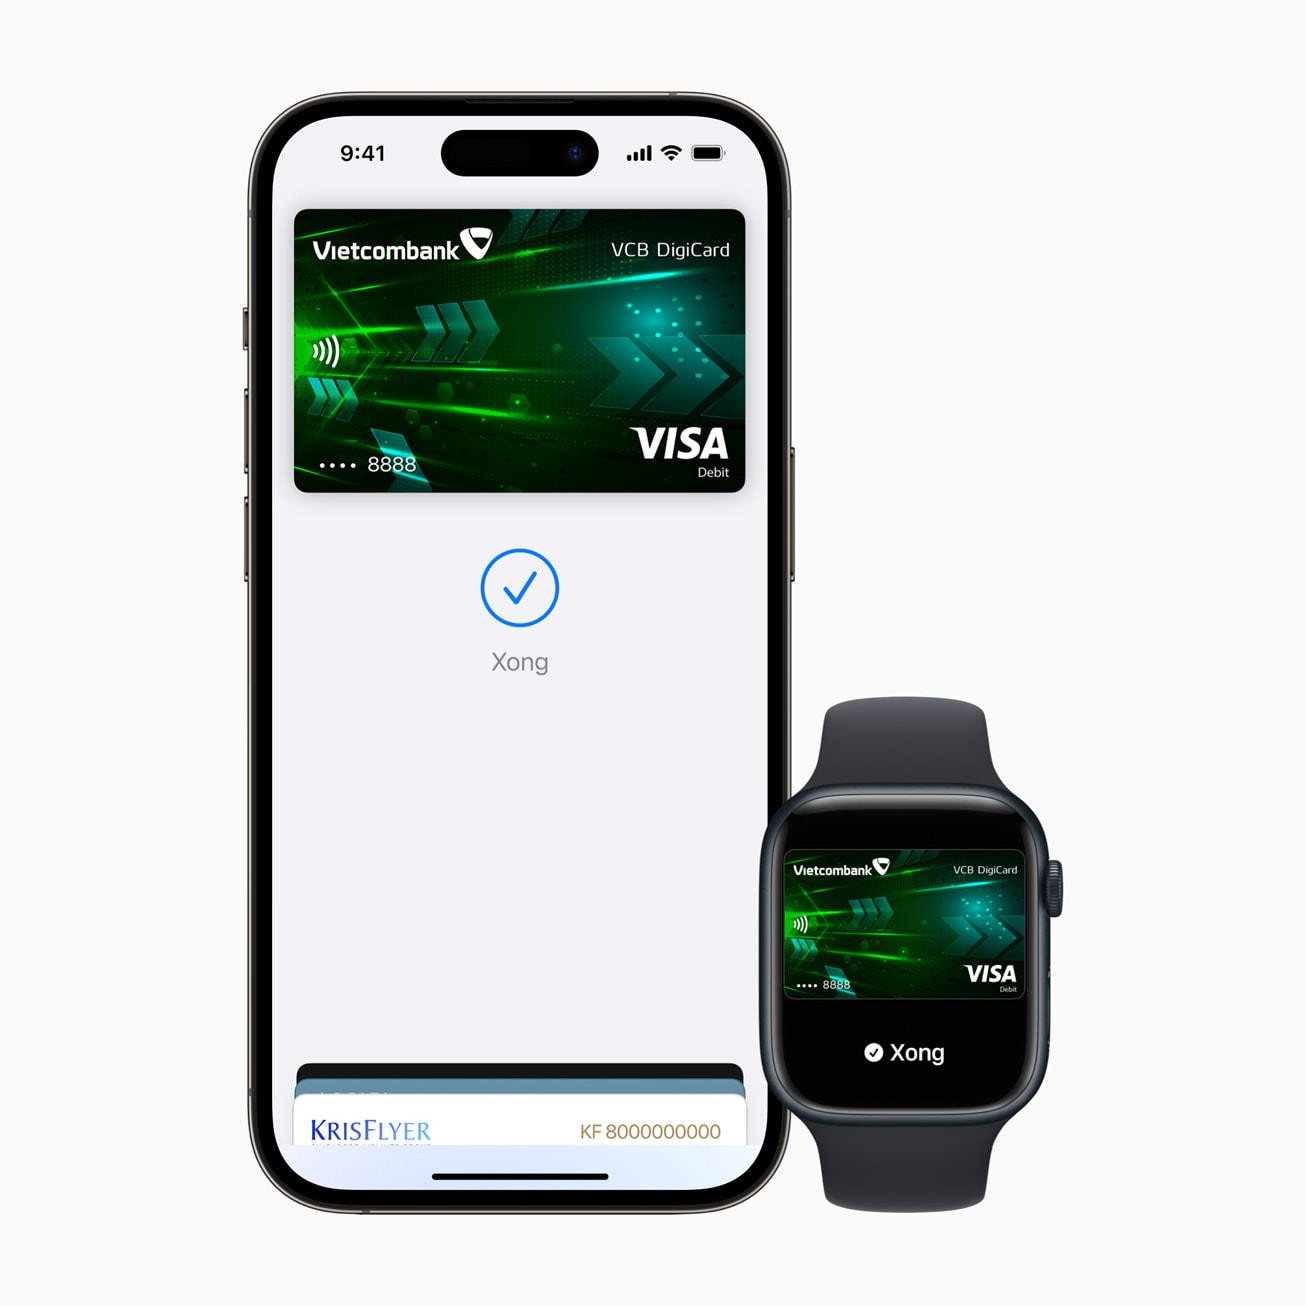 Apple Pay chính thức vào Việt Nam: Thanh toán được bằng iPhone, iPad, Mac, uống cafe, mua hàng Shopee hay đi taxi đều có thể sử dụng - Ảnh 2.